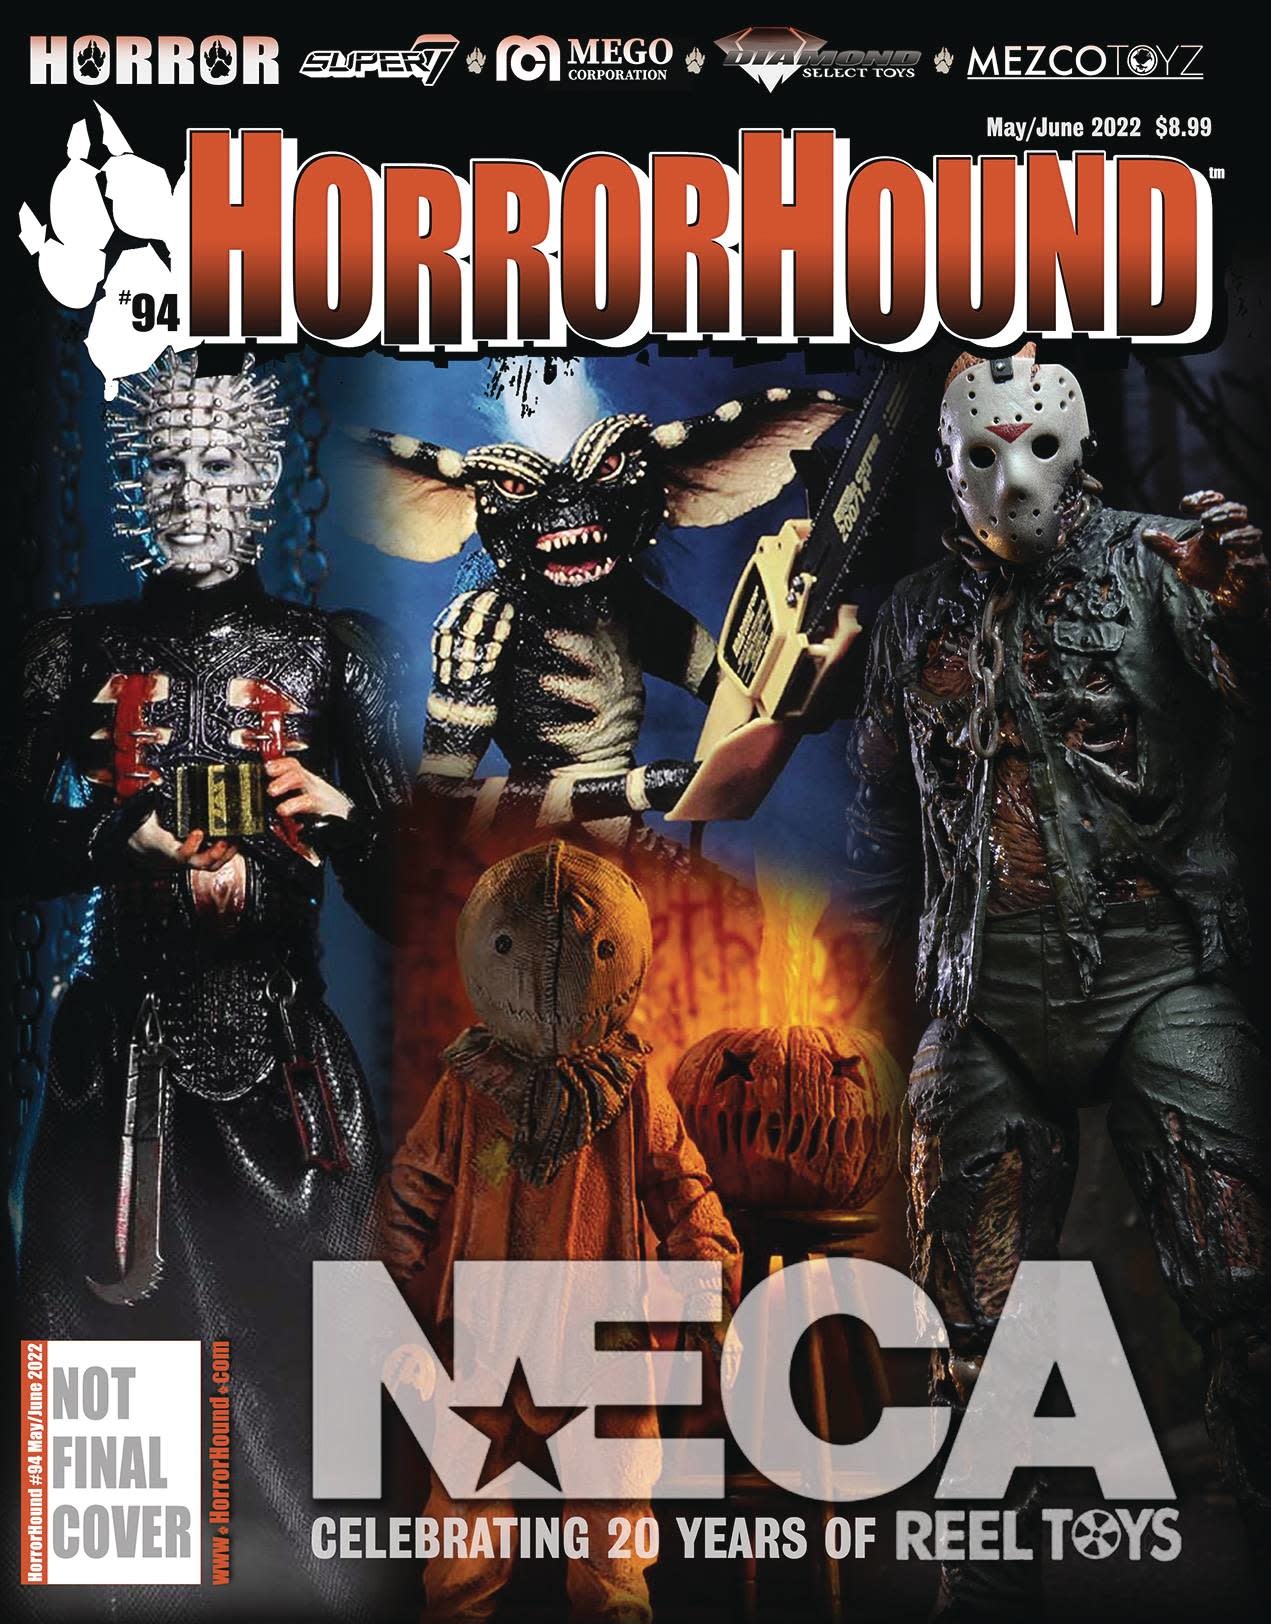 Horrorhound Horrorhound #94